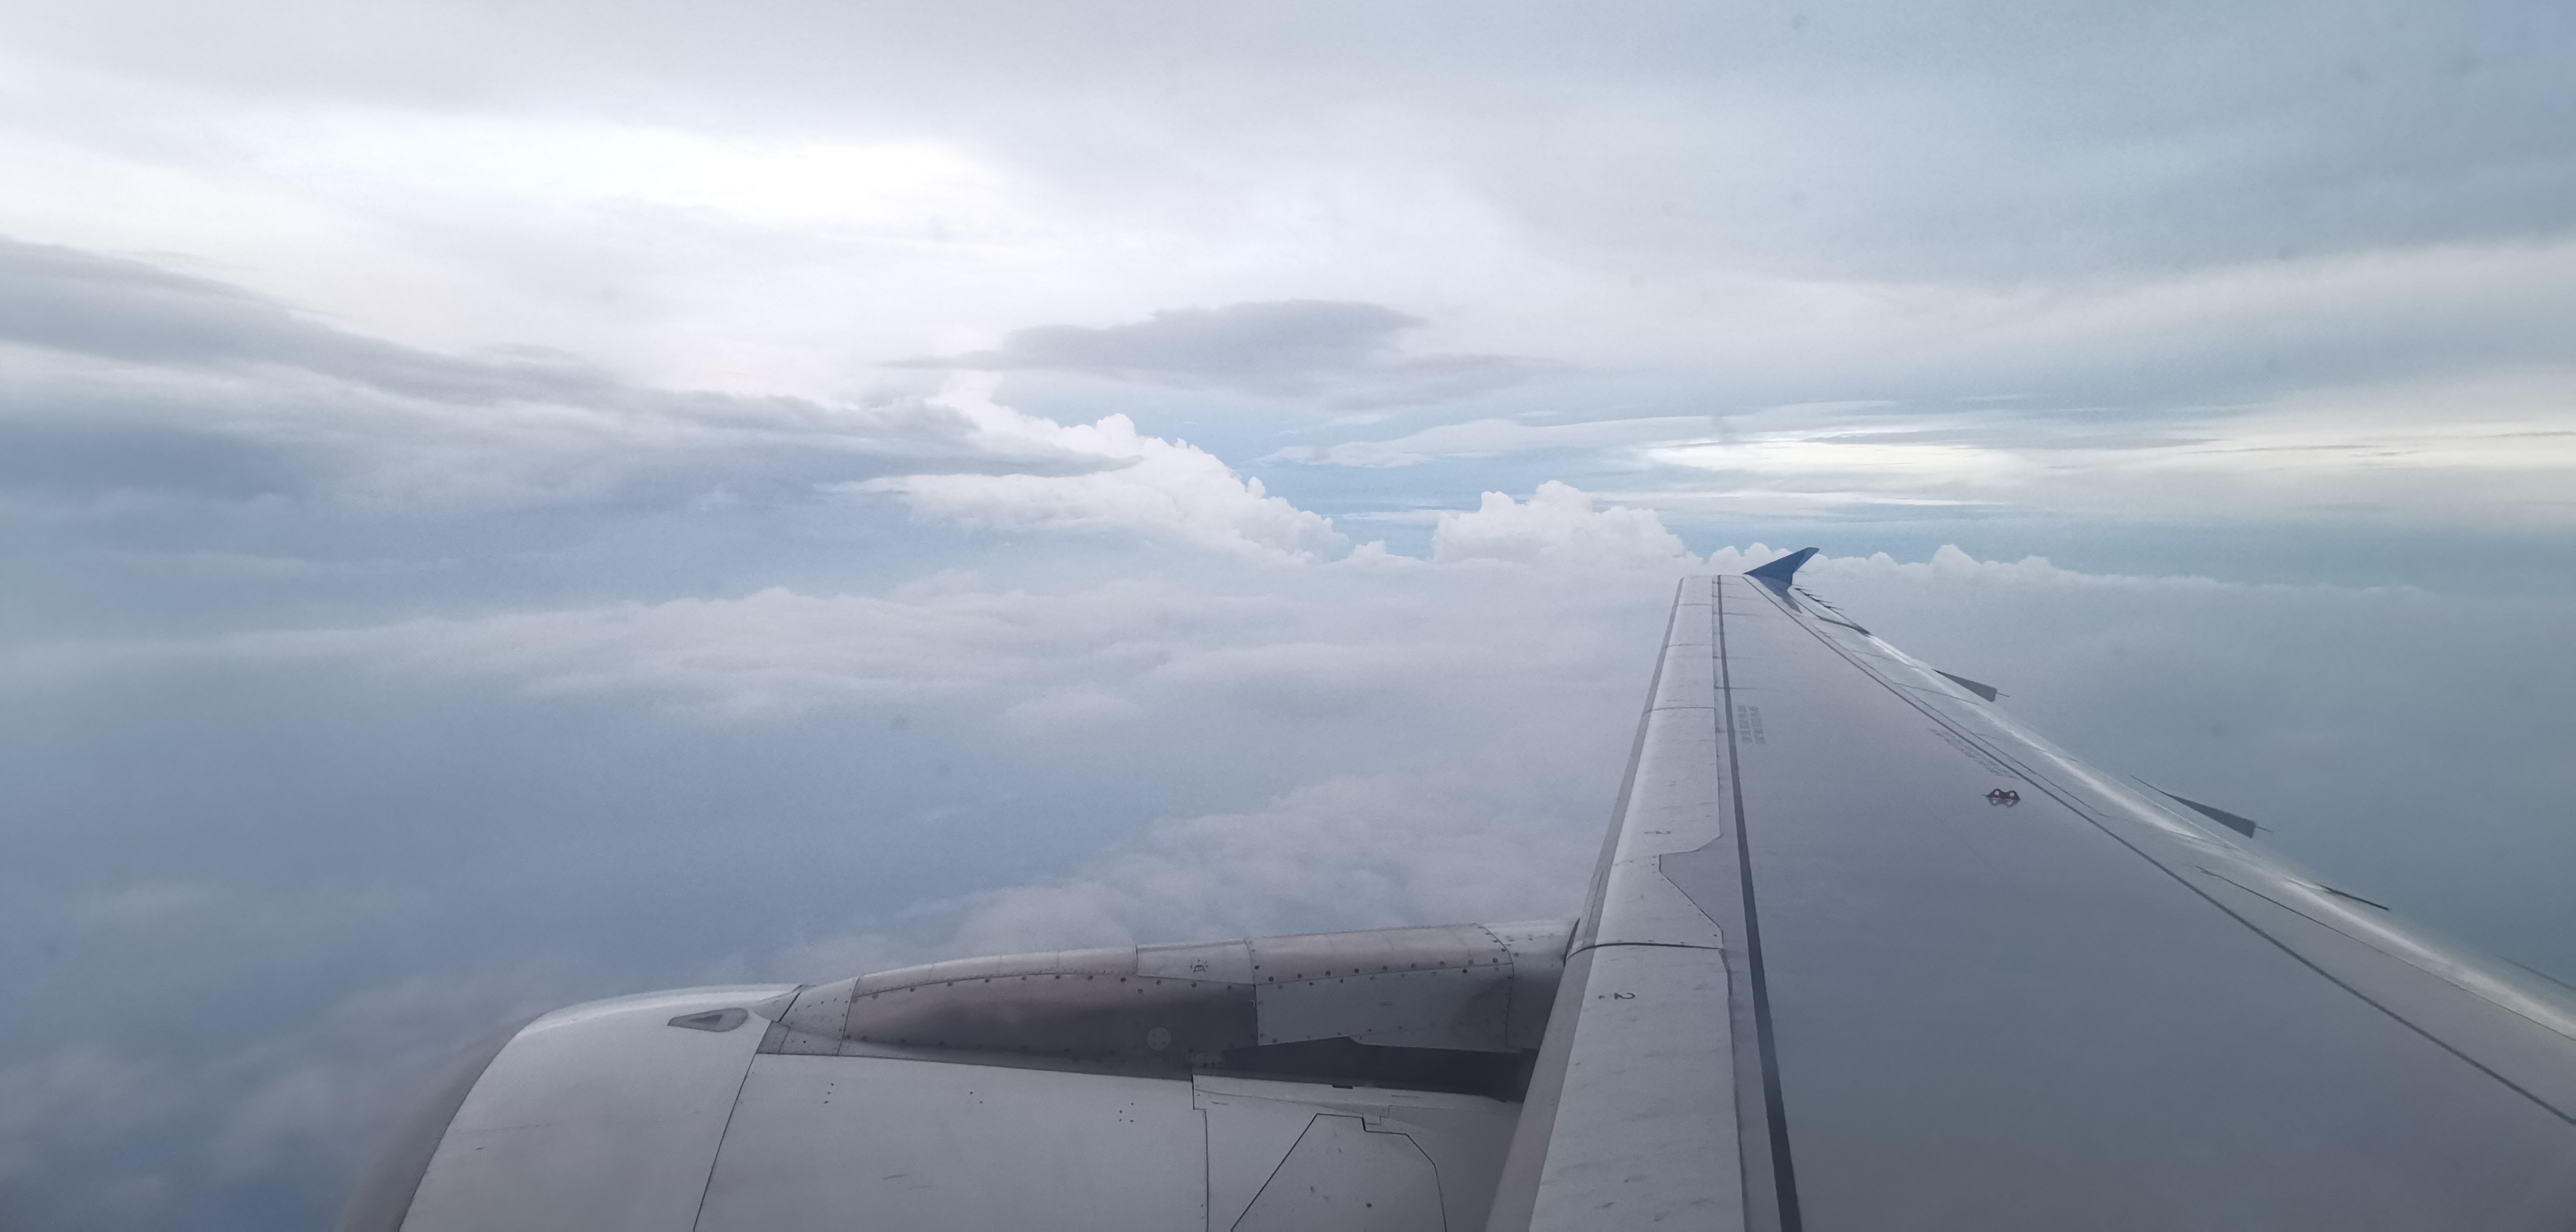 Trải nghiệm bay Bamboo Airways từ TPHCM đi Hà Nội trên Airbus A320: Chất lượng đang đi xuống?